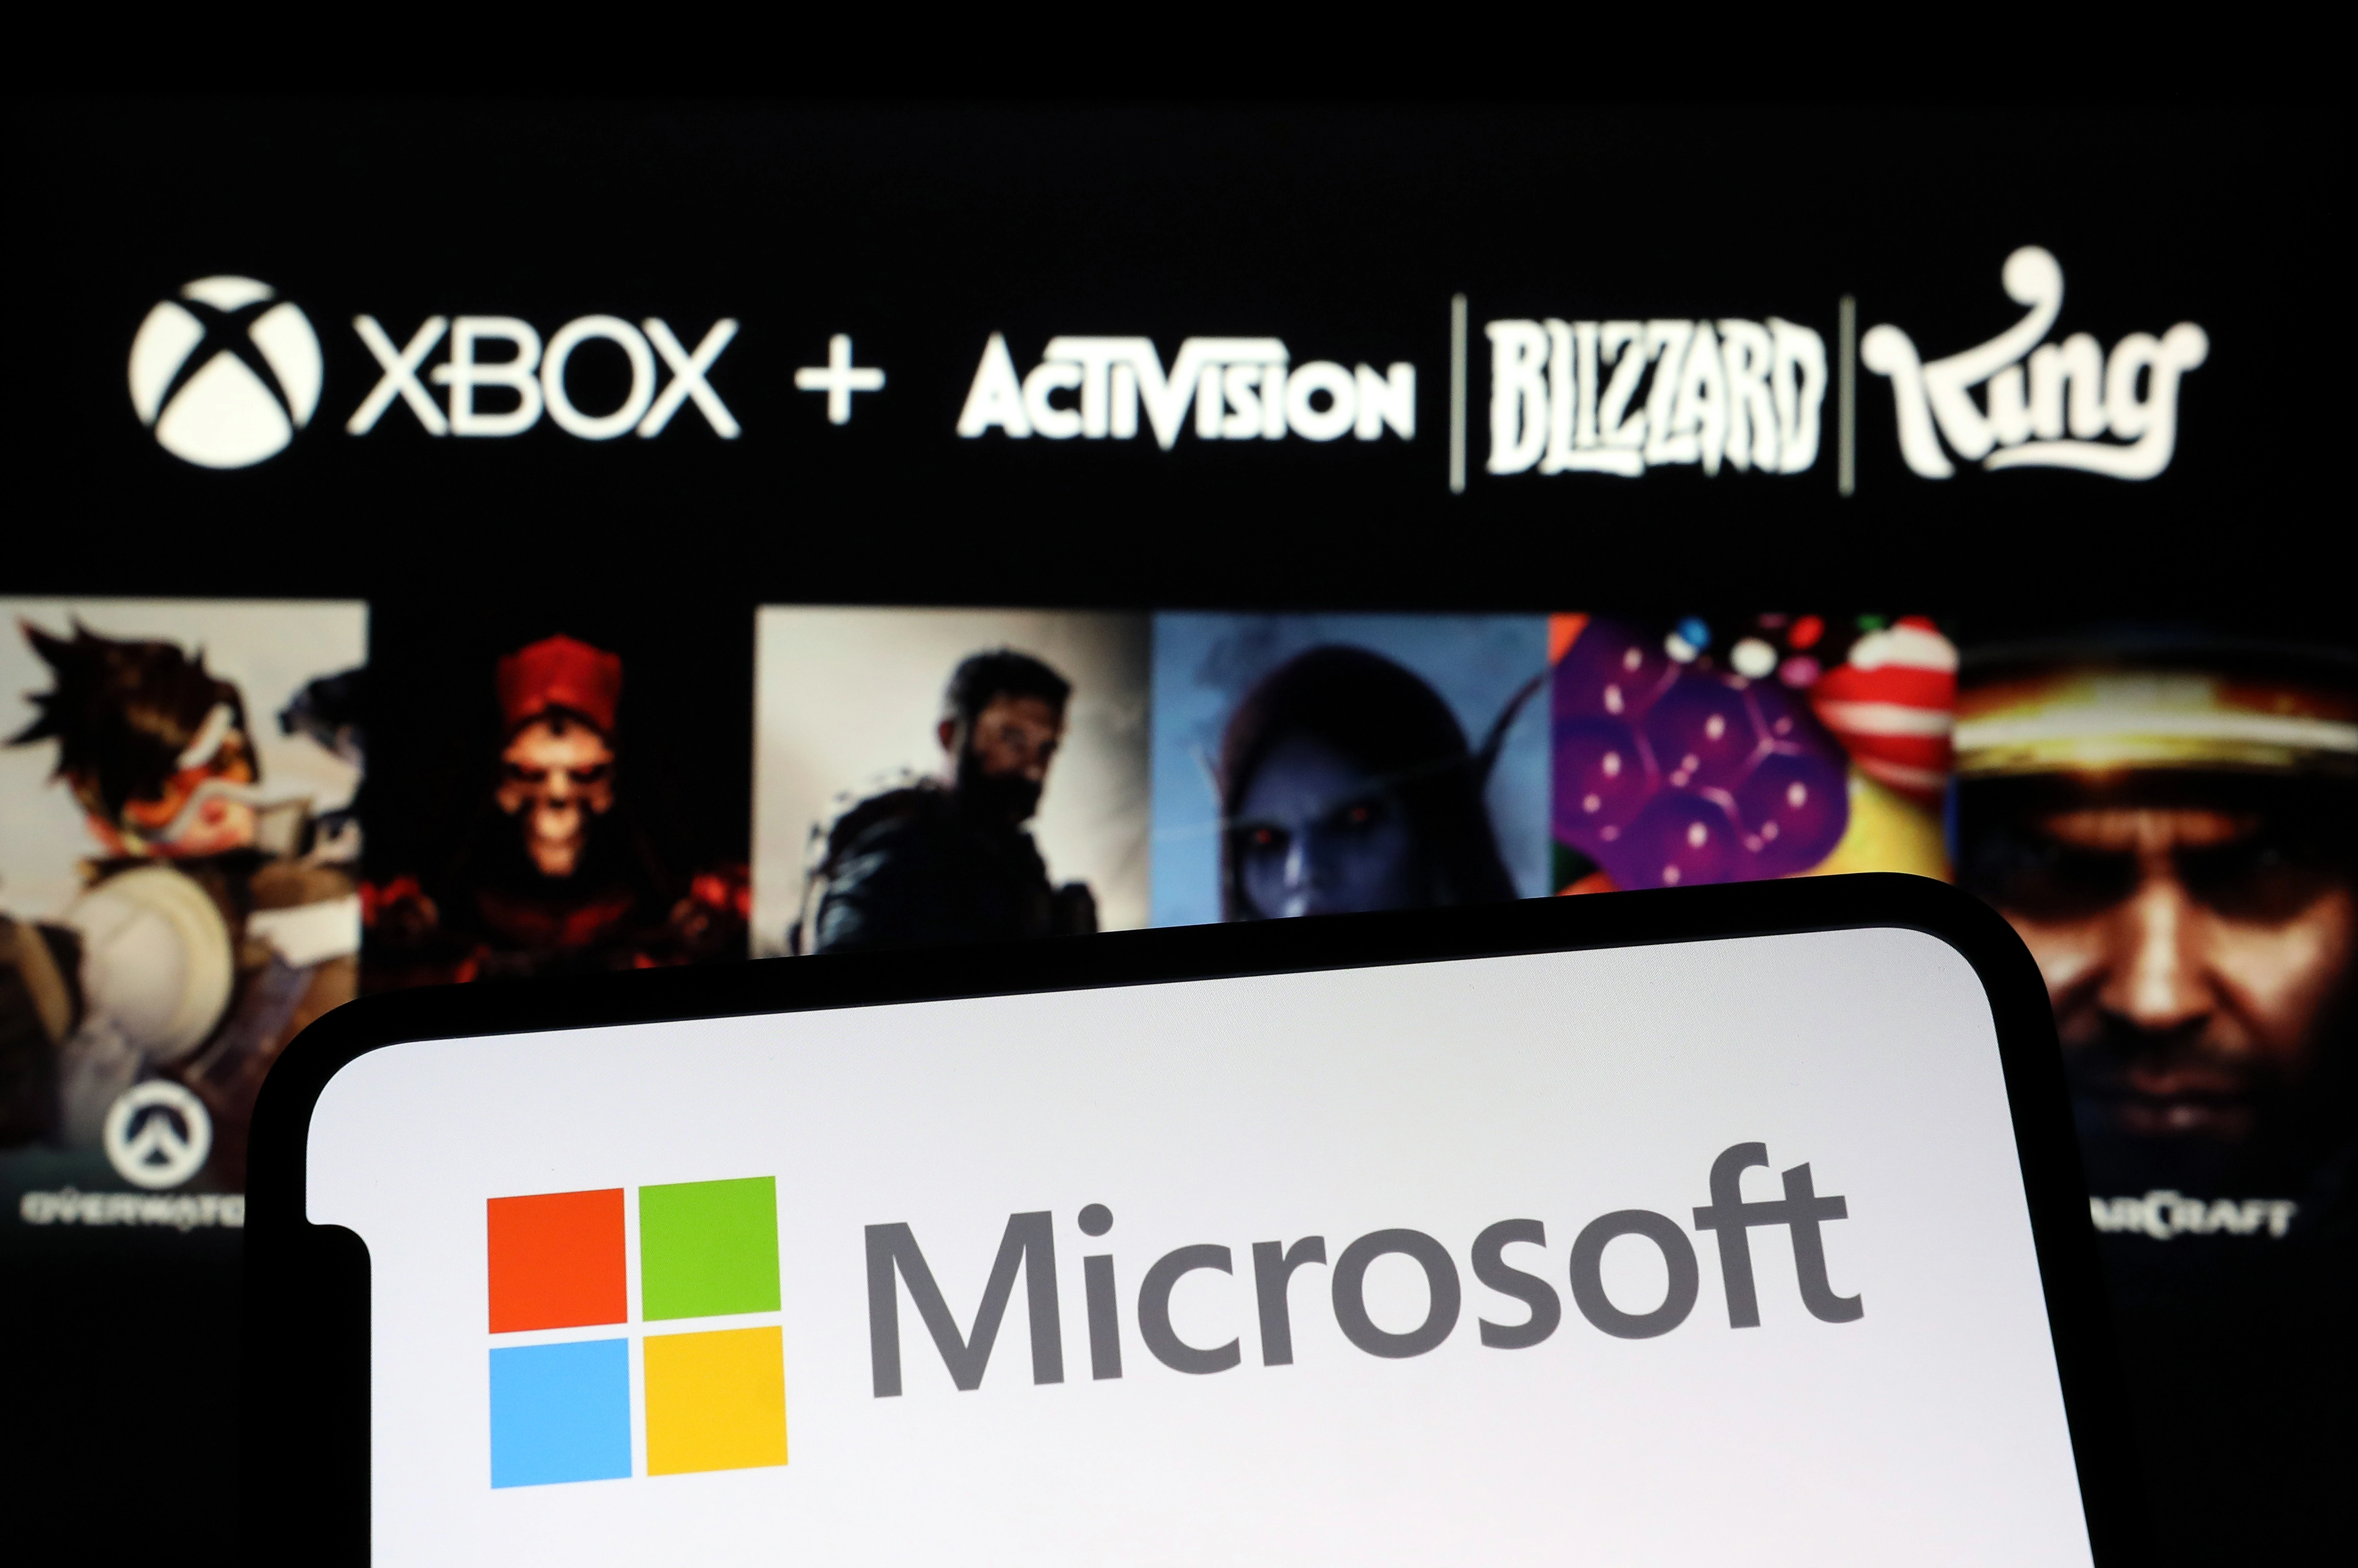 L'accordo Microsoft Activision sarà probabilmente approvato dalle autorità di regolamentazione dell'UE, secondo quanto riportato da Reuters